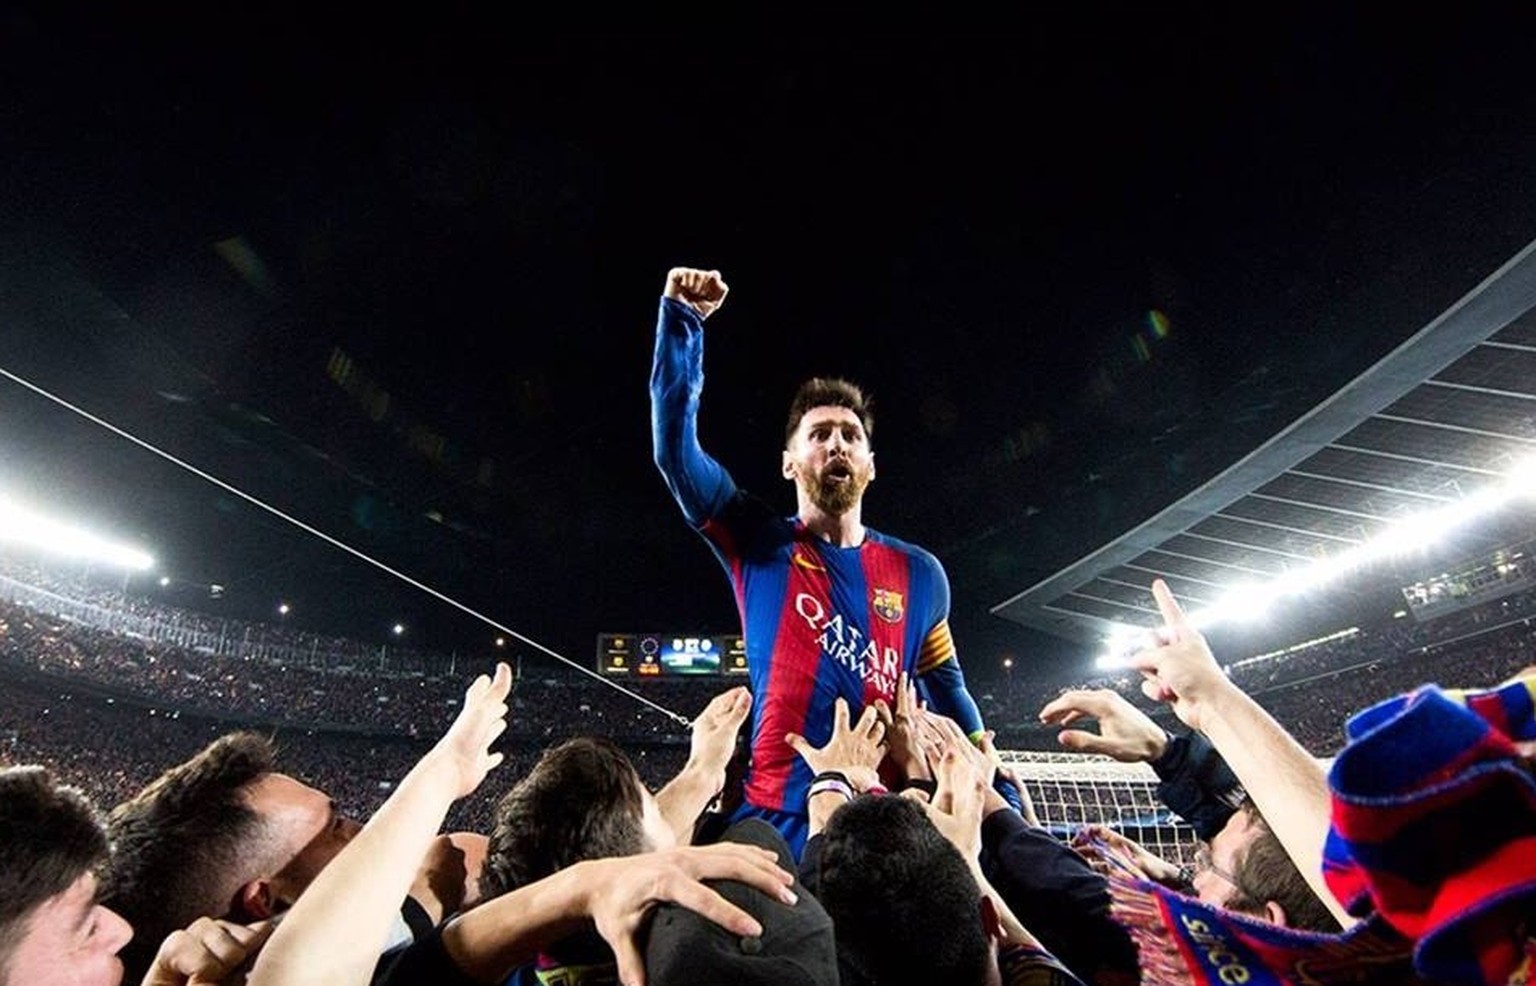 Barcelona gewinnt im Rückspiel des Champions-League-Achtelfinals gegen Paris Saint-Germain mit 6:1 und qualifiziert sich so in extremis für die Viertelfinals. Lionel Messi nimmt ein Bad in der Menge.